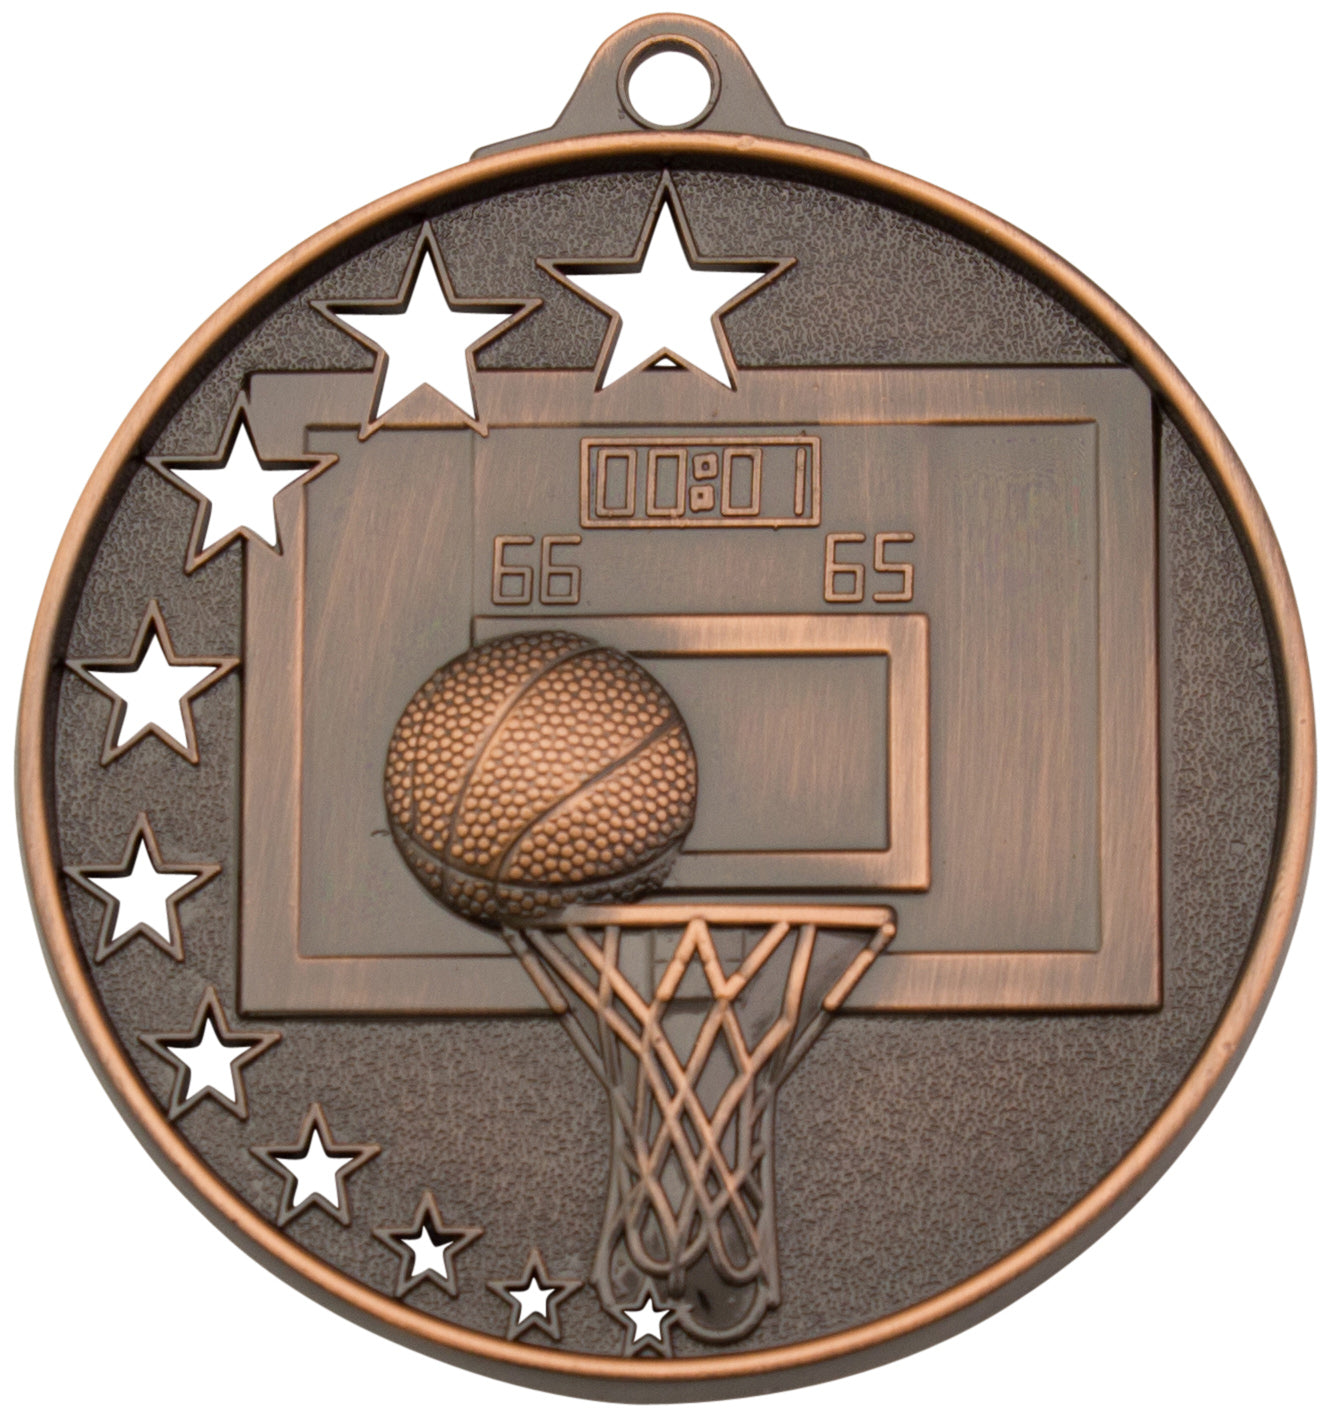 MH907 Basketball Medal